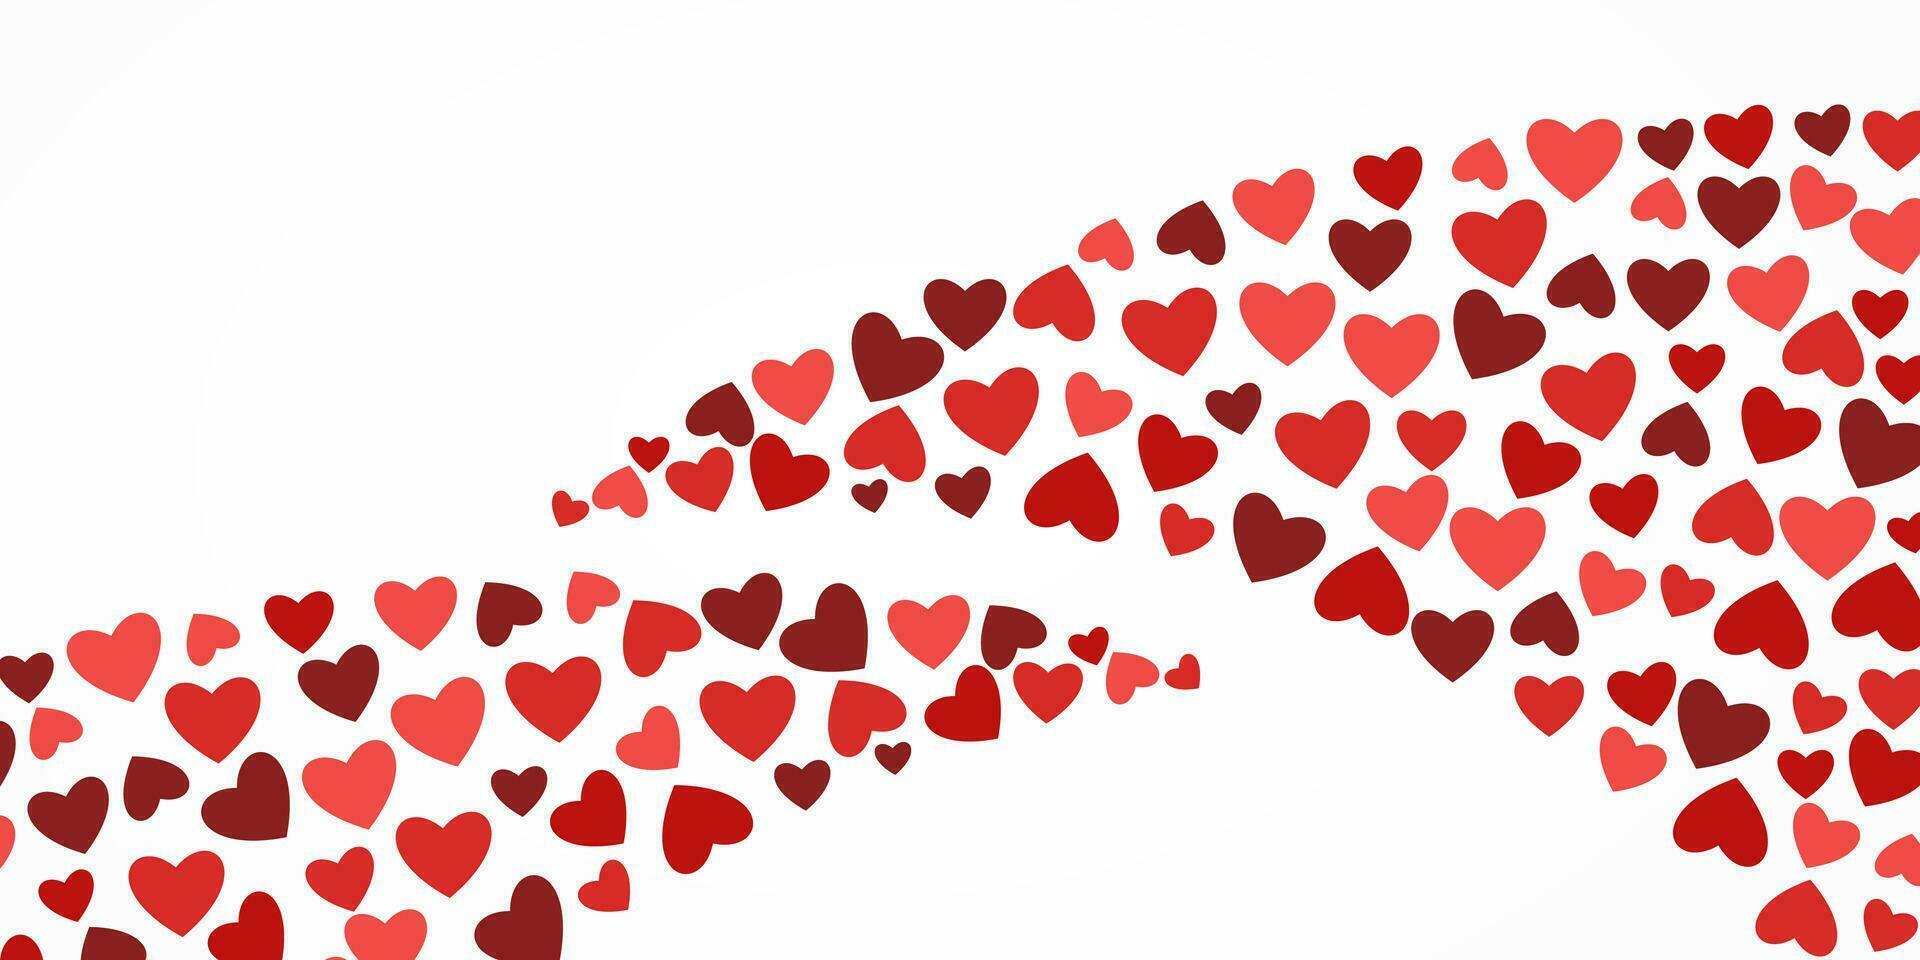 abstract achtergrond met aantrekkelijk hart pictogrammen. ontwerp voor valentijnskaarten, verjaardagen, partijen. vector voor banier, groet kaart, poster, web.